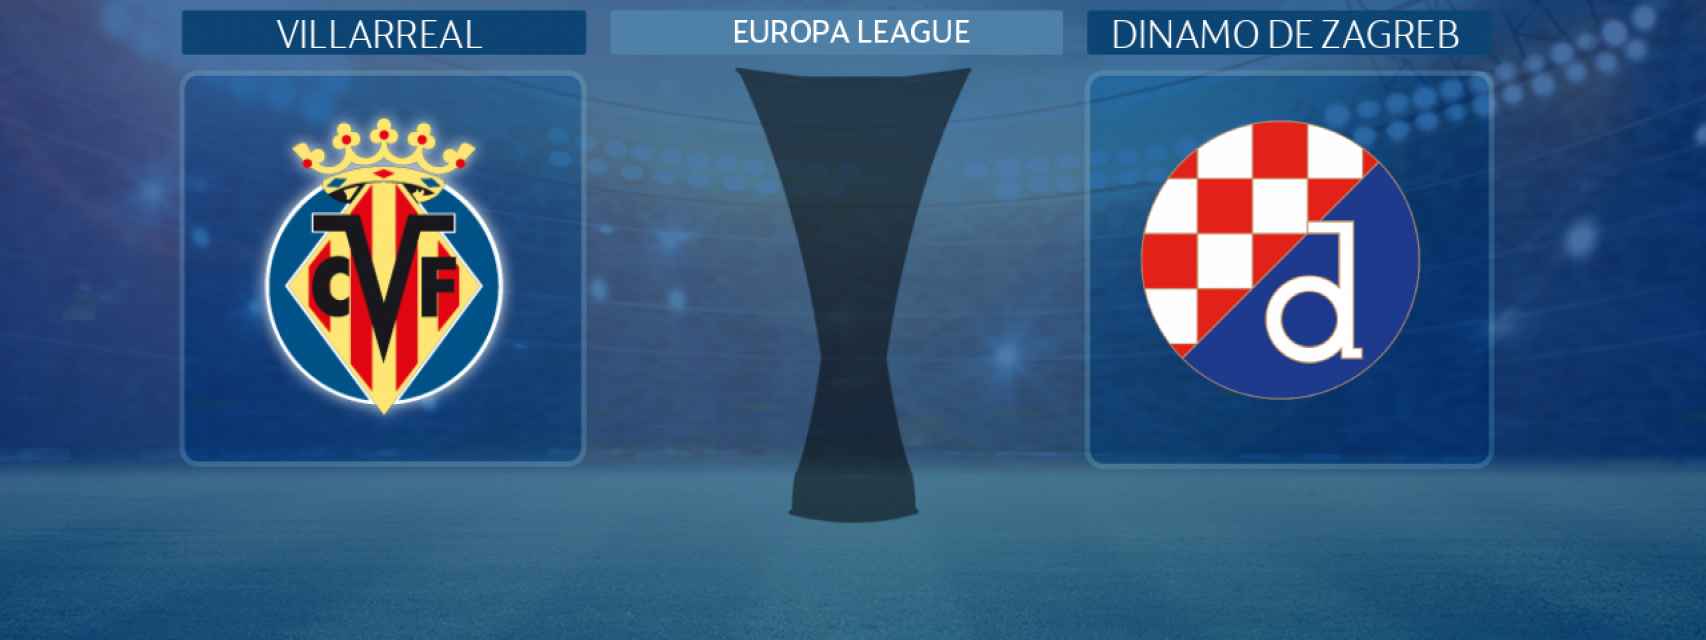 Villarreal - Dinamo de Zagreb, partido de la Europa League